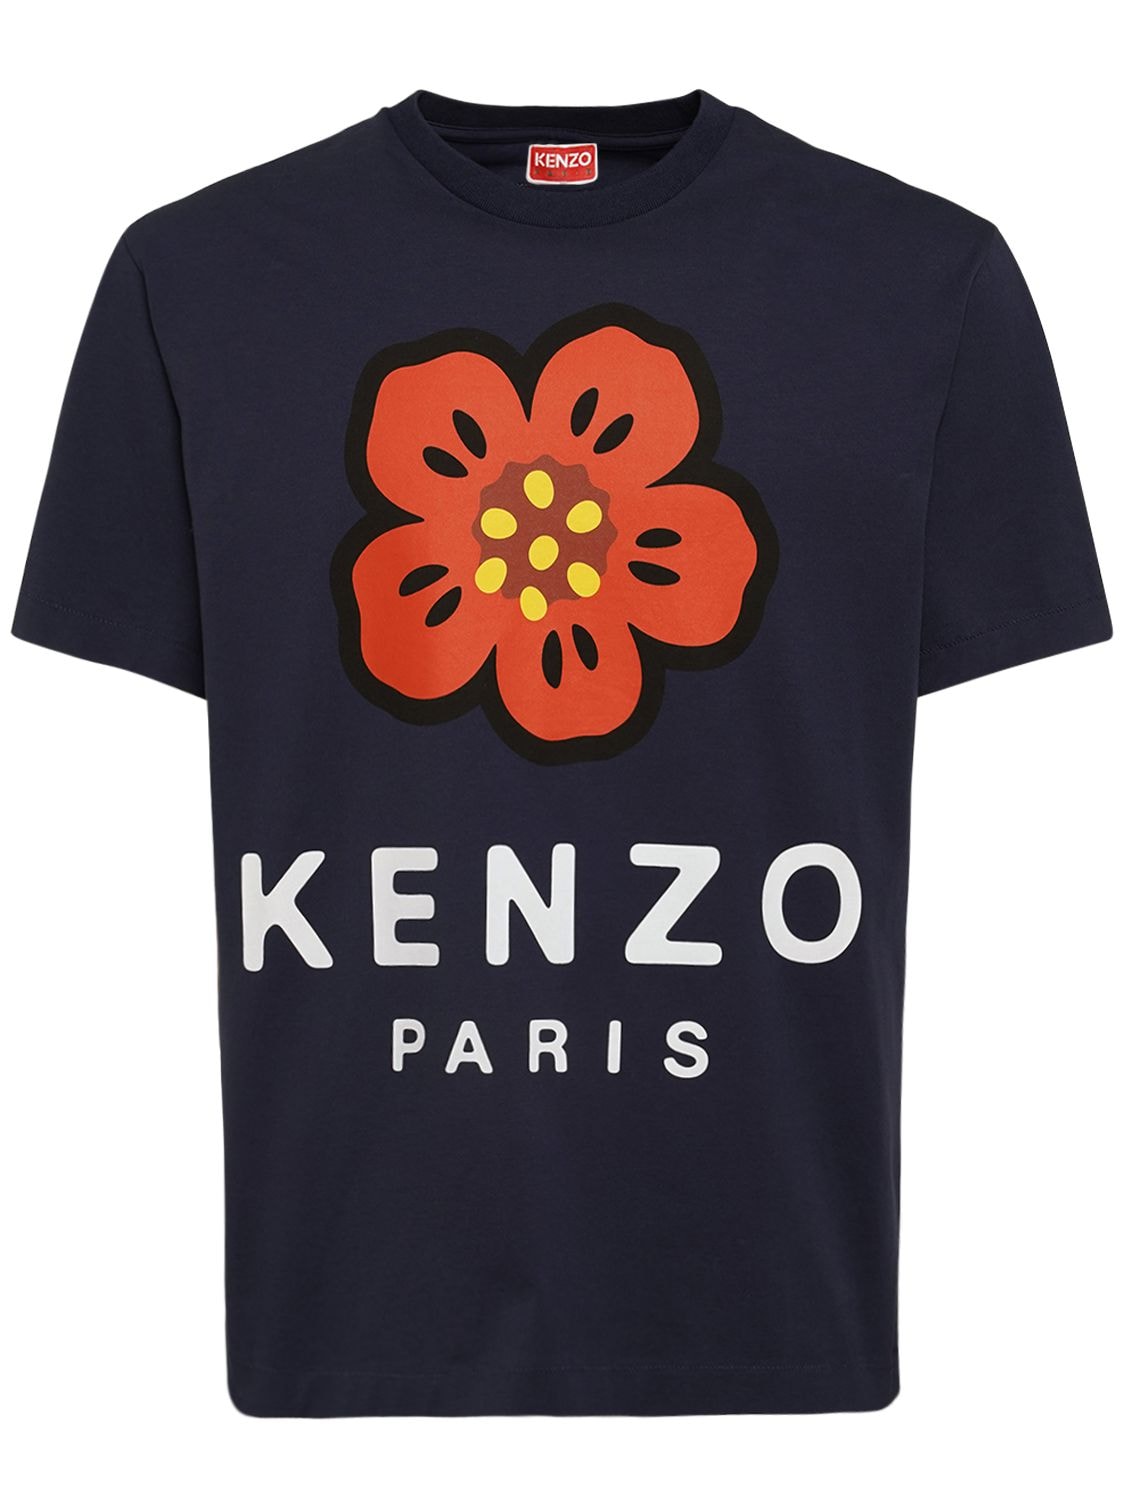 KENZO PARIS Boke Print Cotton Jersey T-shirt